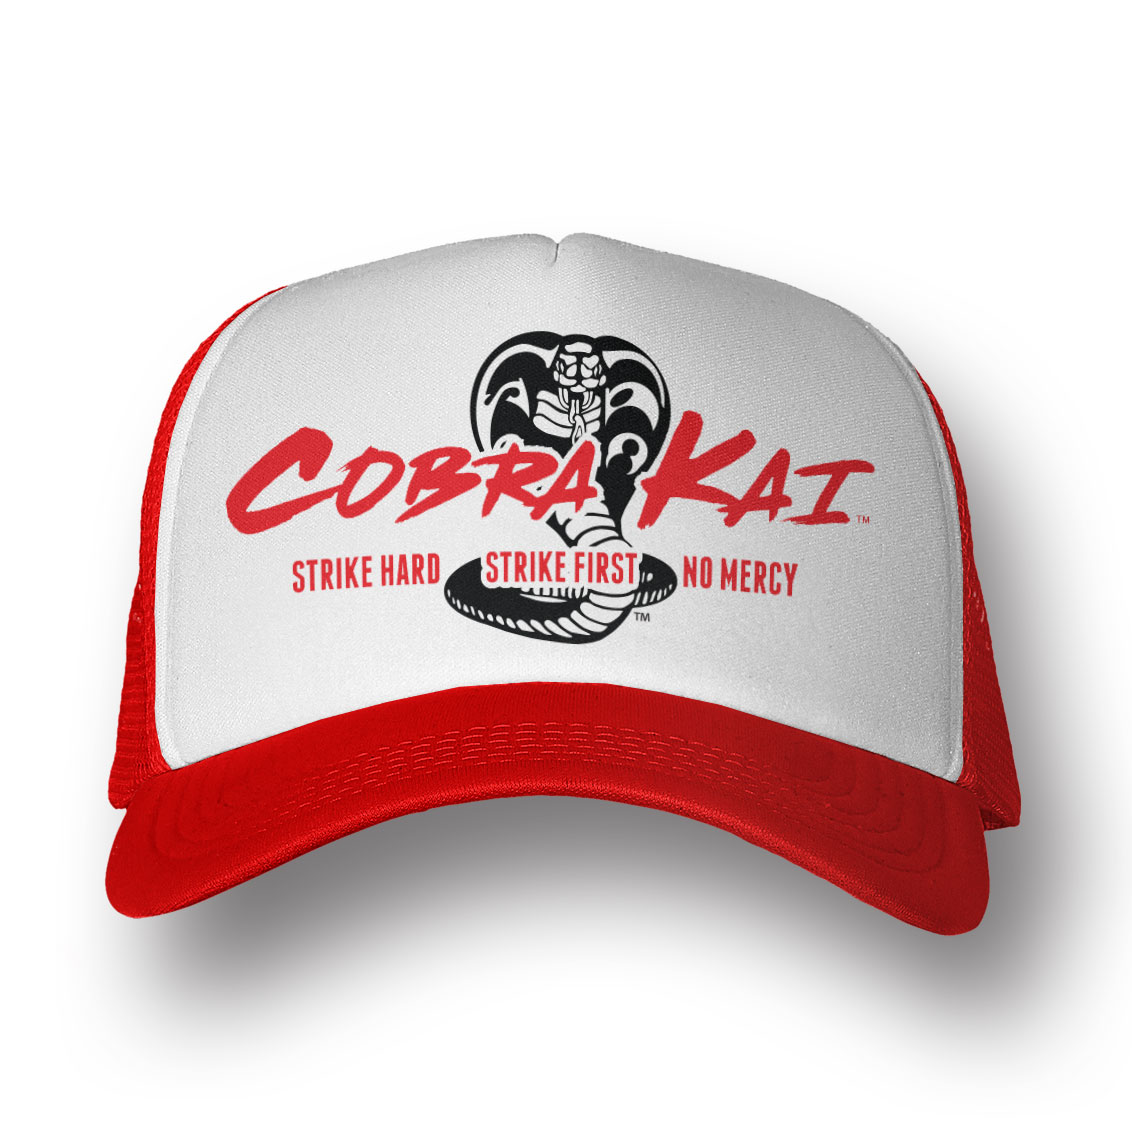 Cobra Kai Trucker Cap